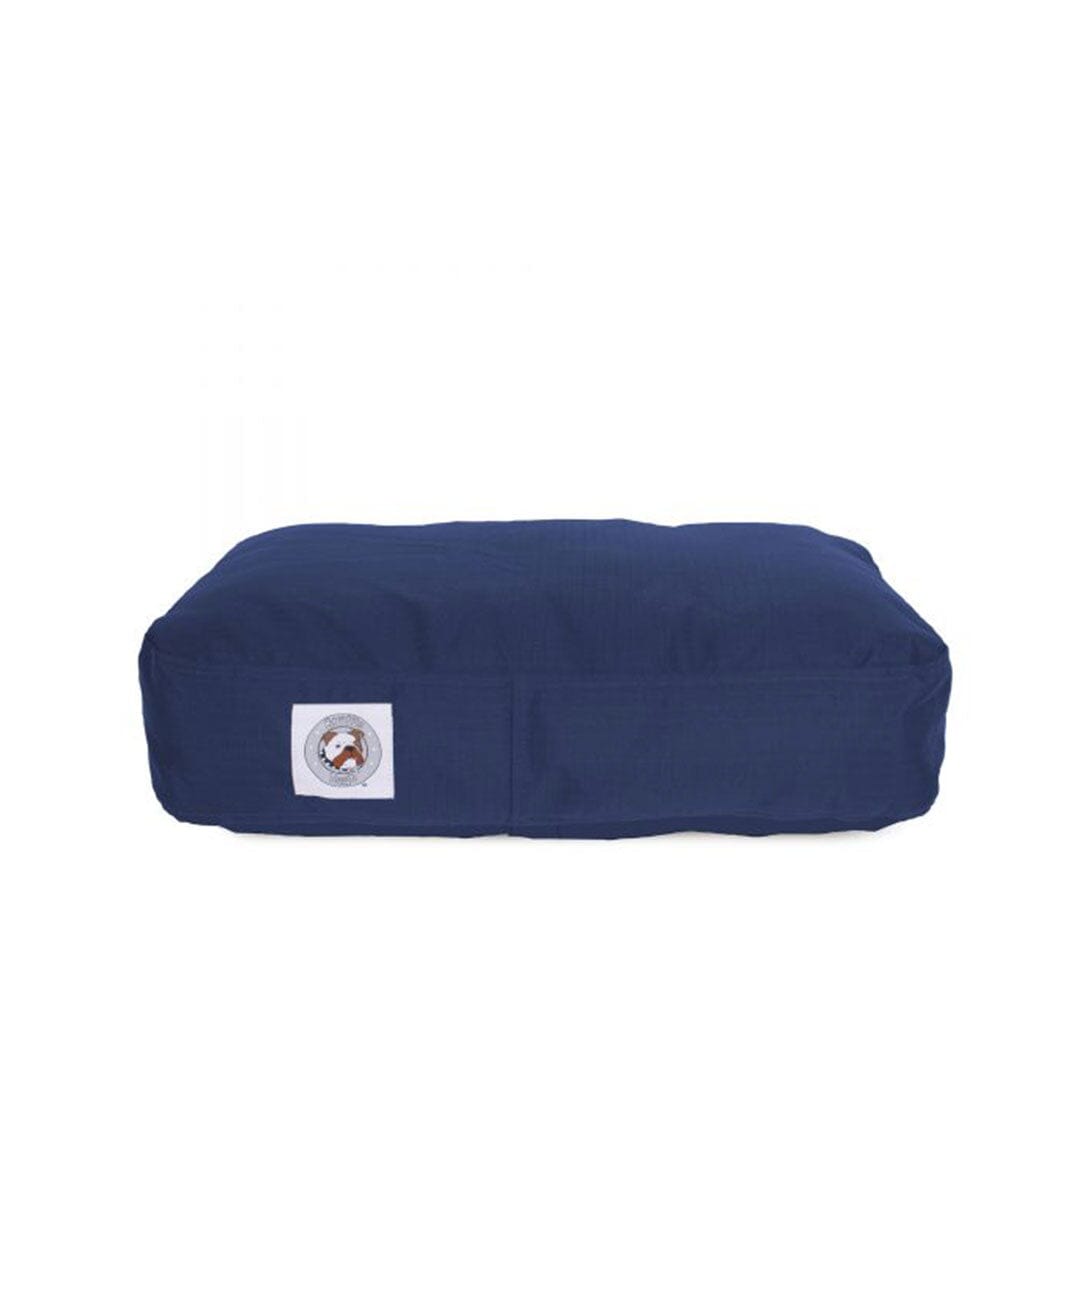 Navy blue dog bed